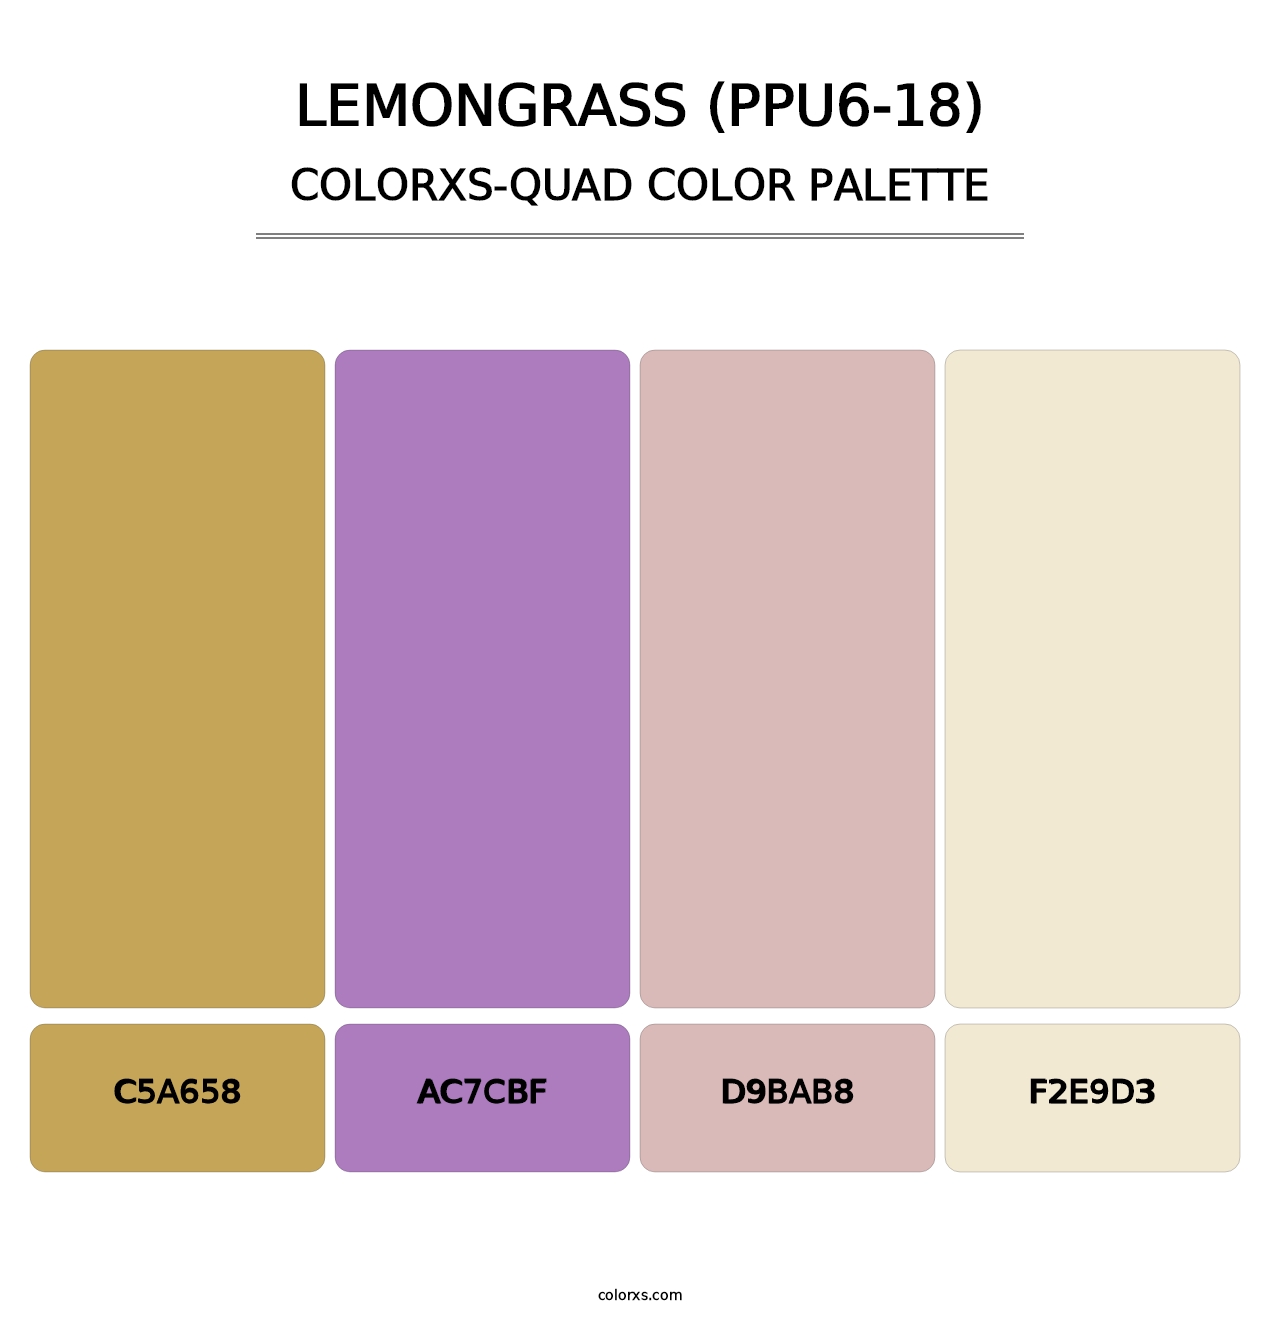 Lemongrass (PPU6-18) - Colorxs Quad Palette